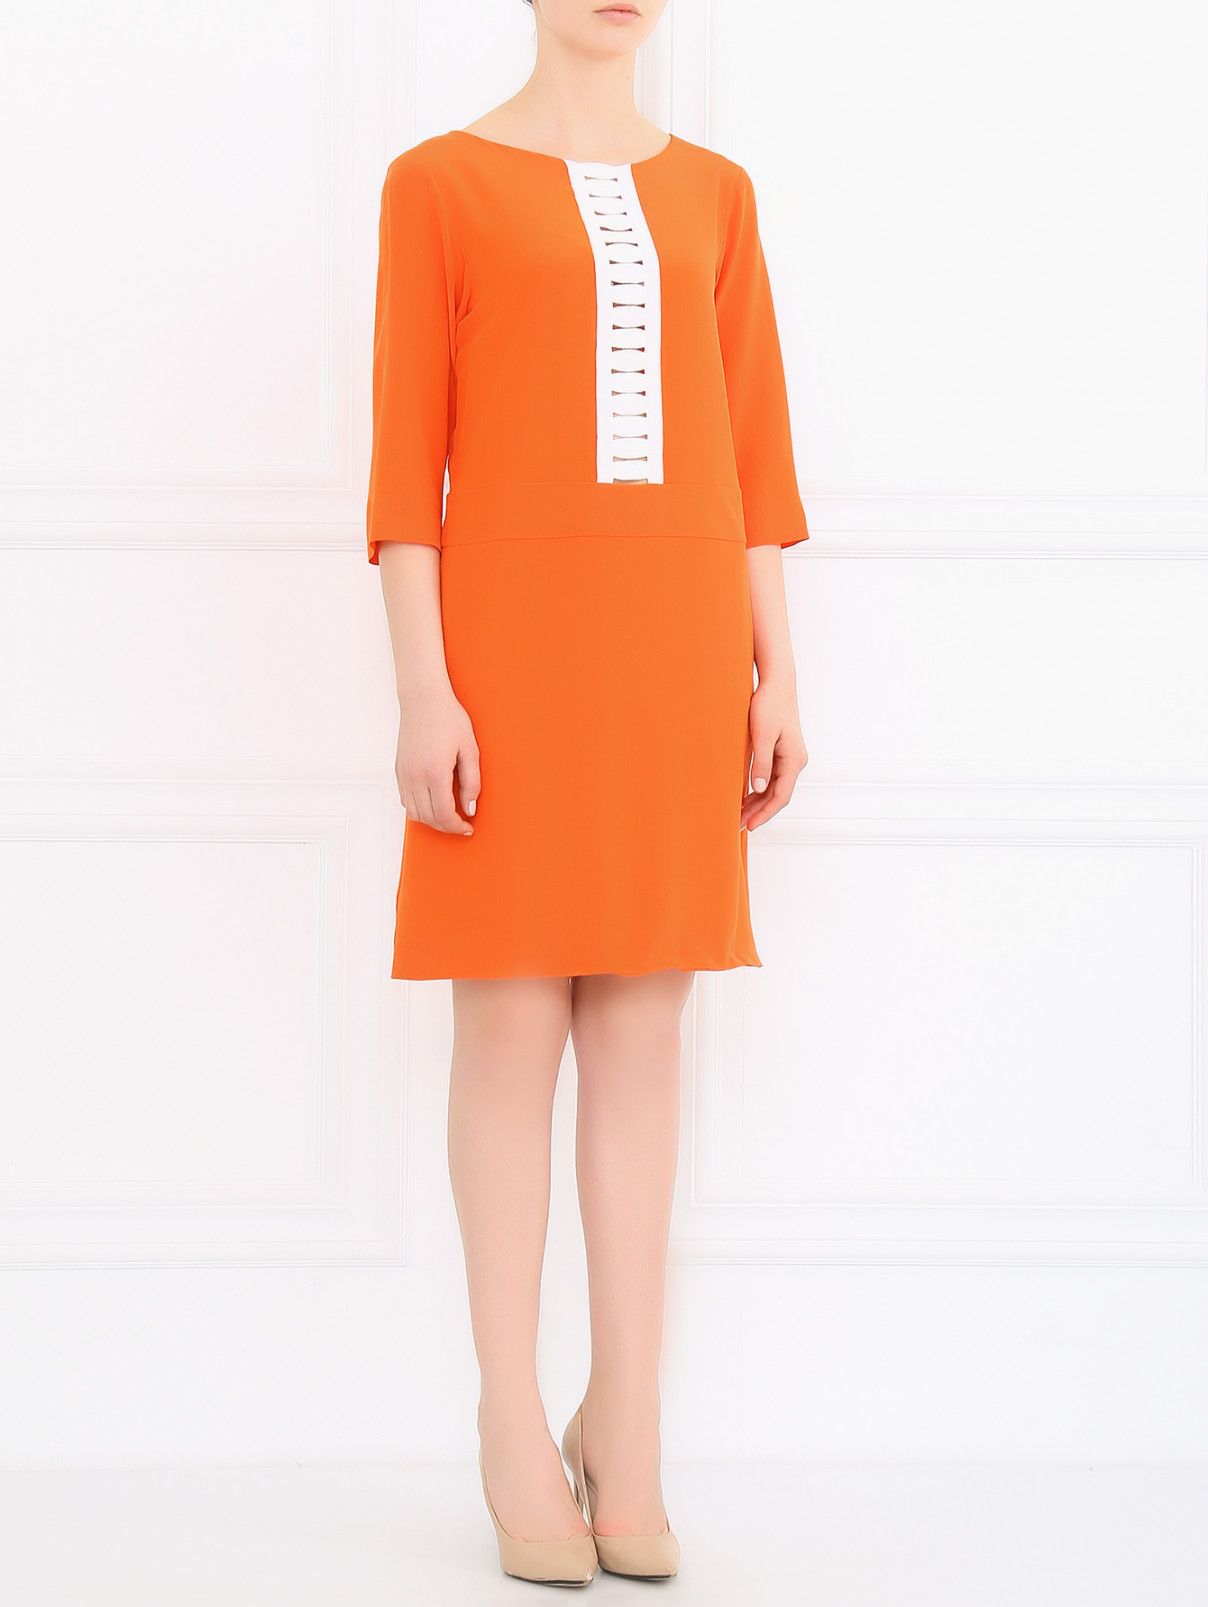 Платье из шелка с контрастной вставкой Moschino  –  Модель Общий вид  – Цвет:  Оранжевый